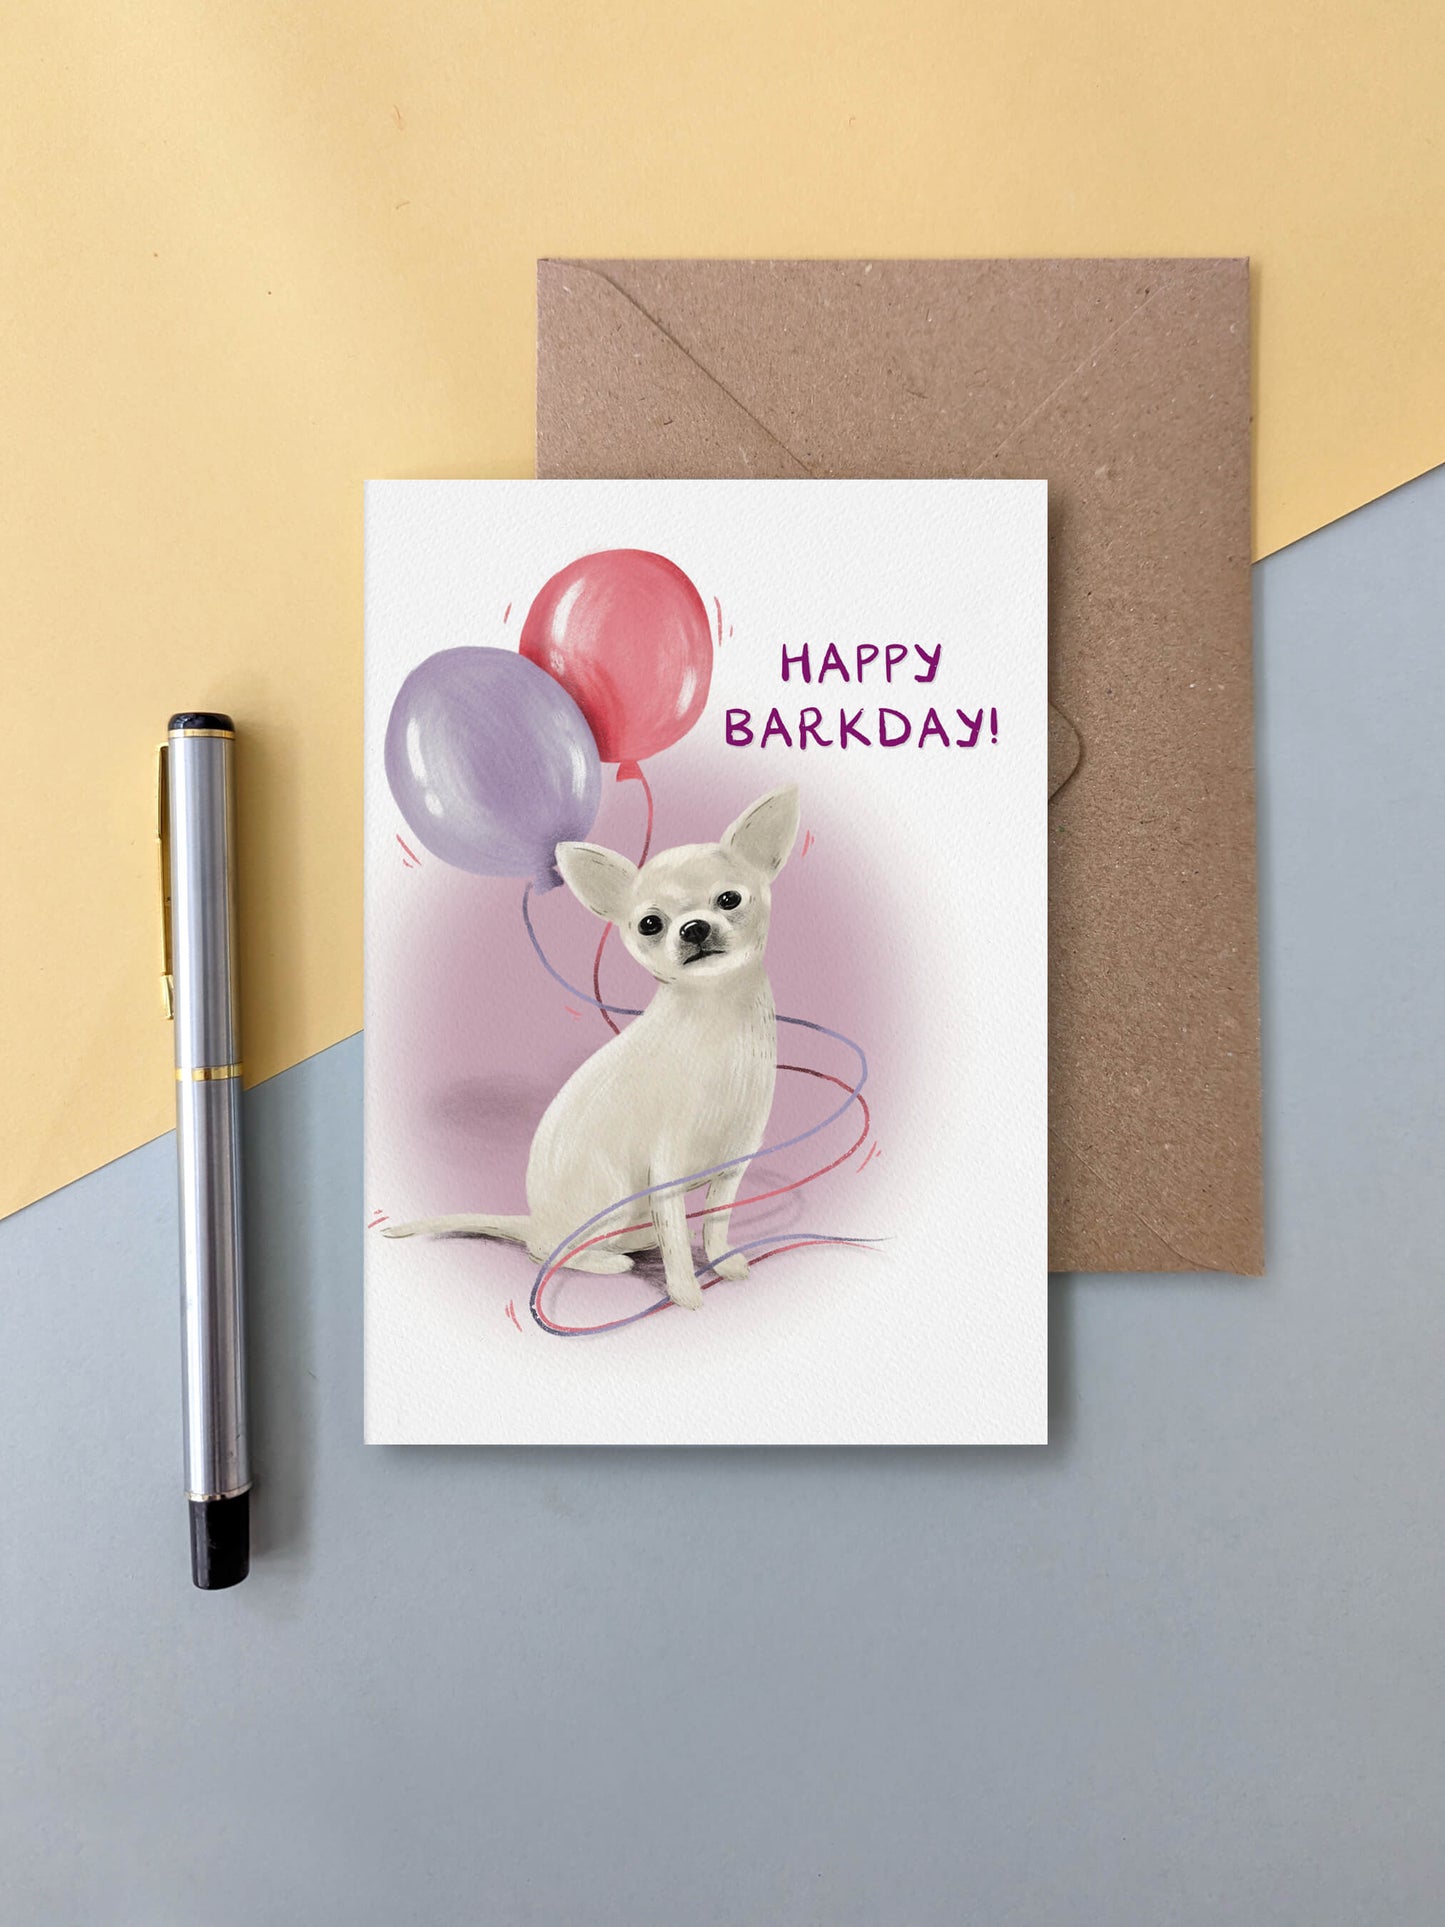 Happy Barkday (chihuahua) – dog greeting card